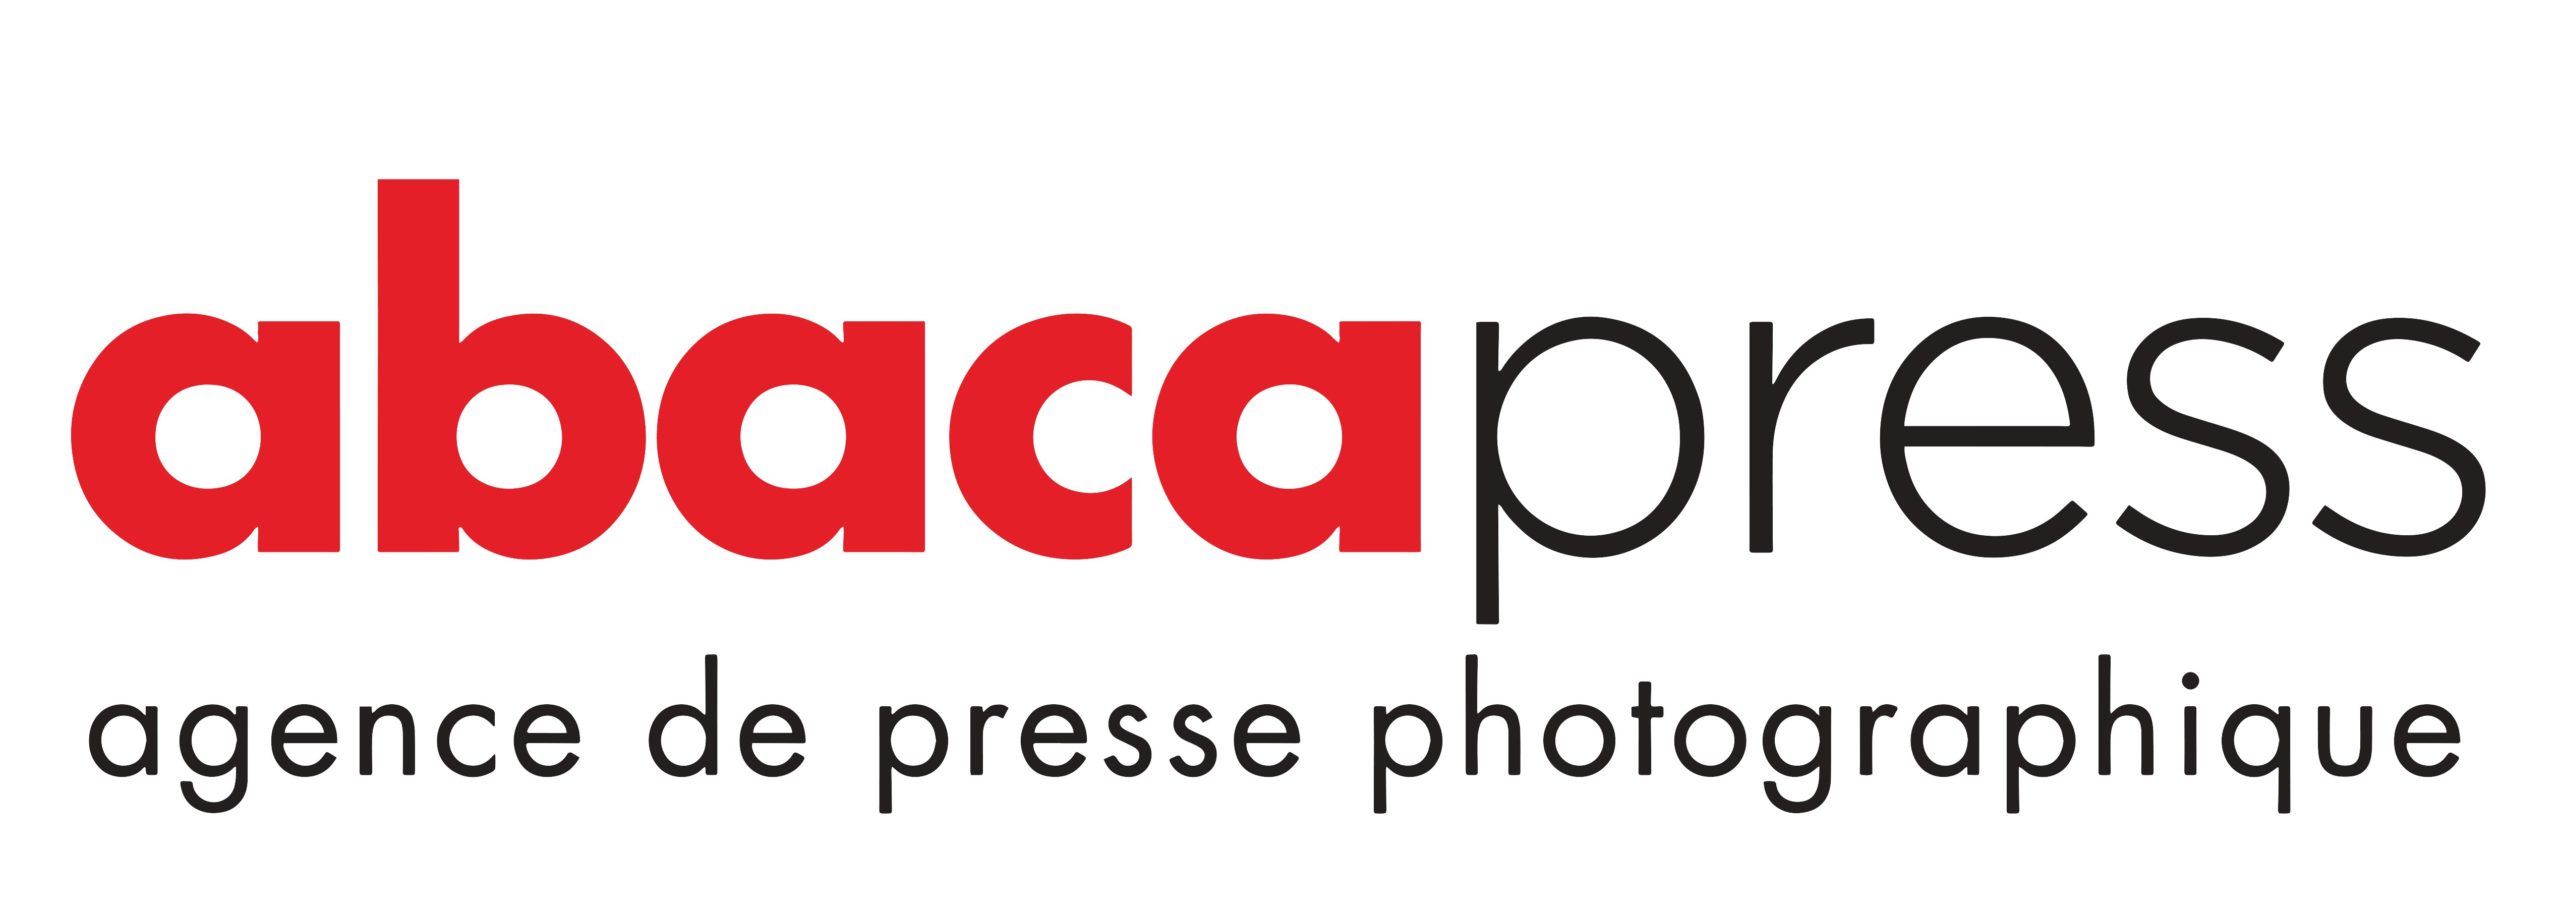 abaca-press-scaled.jpg